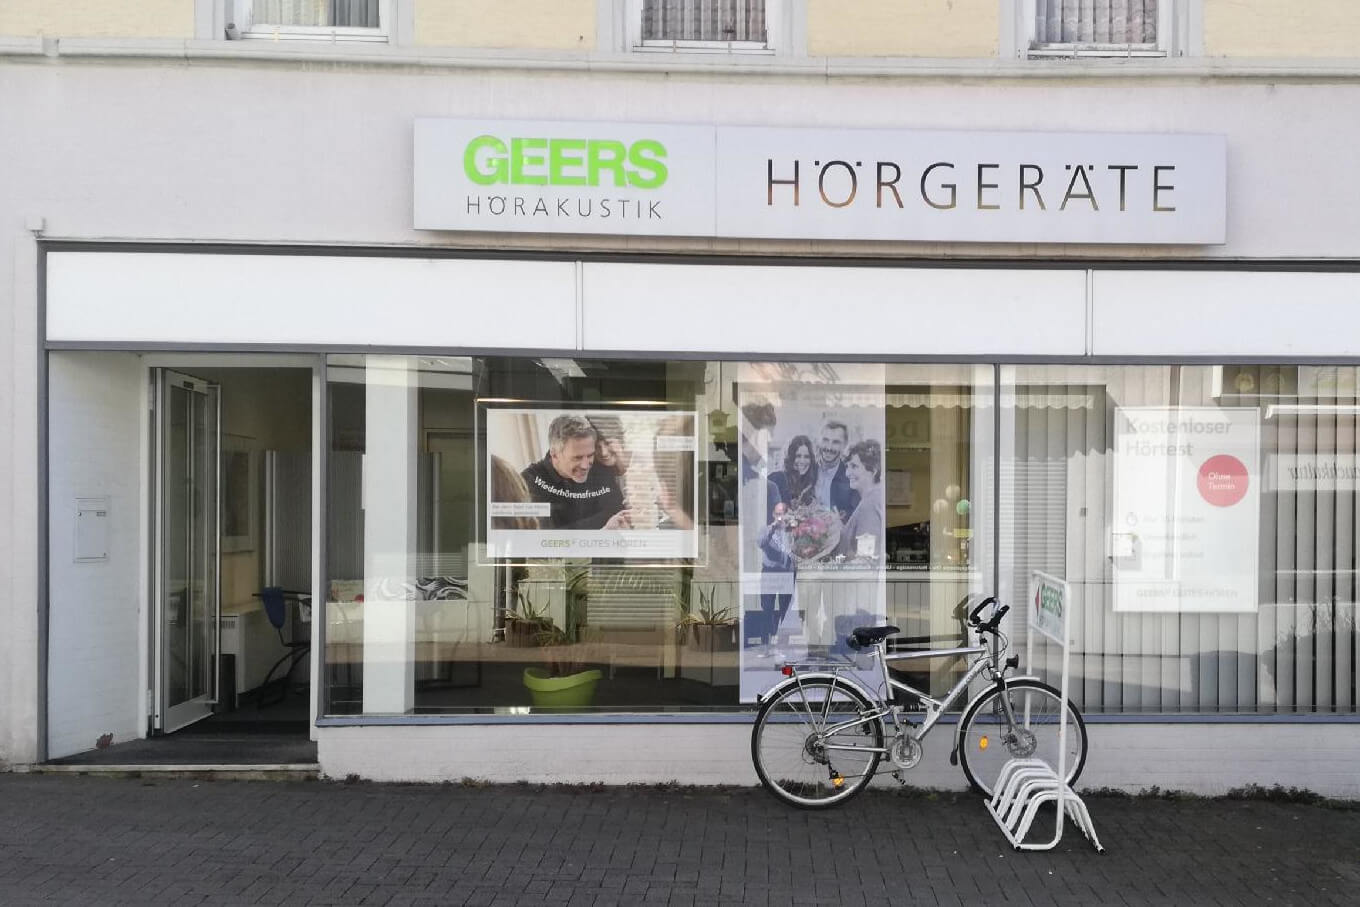 Bild 1 GEERS Hörgeräte in Bensheim